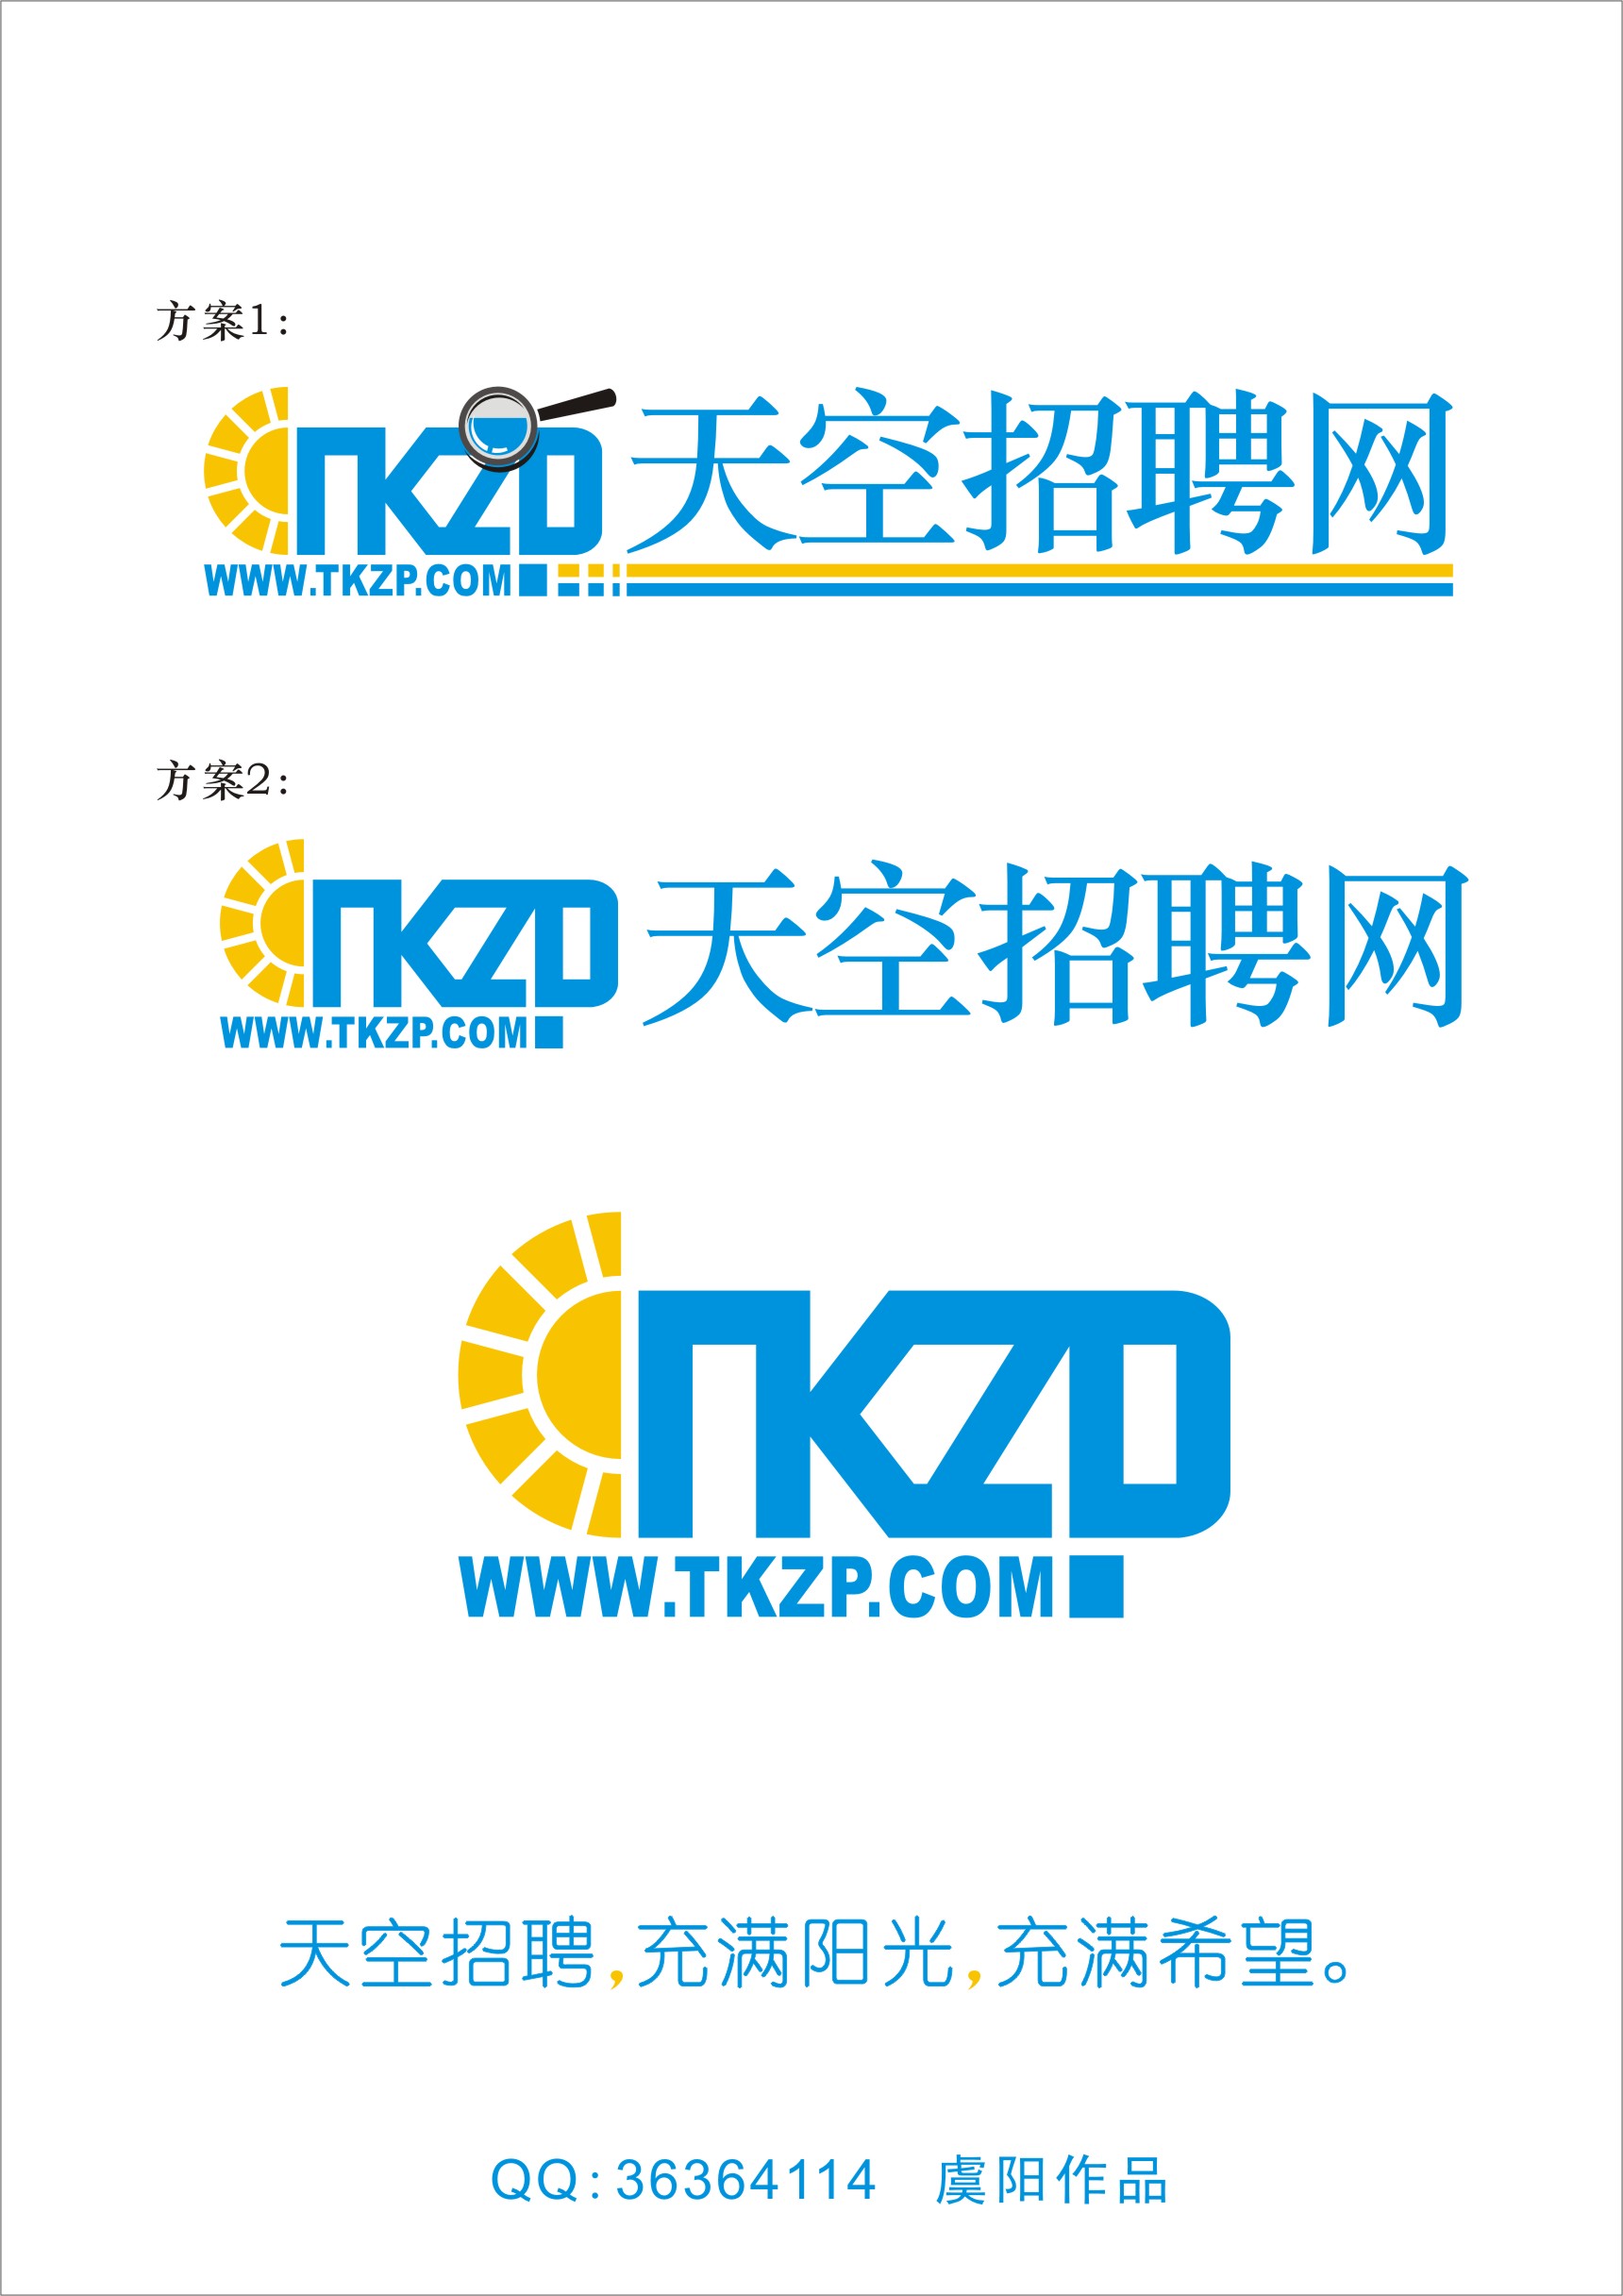 tkzp天空招聘网Logo设计_1000元_K68威客任